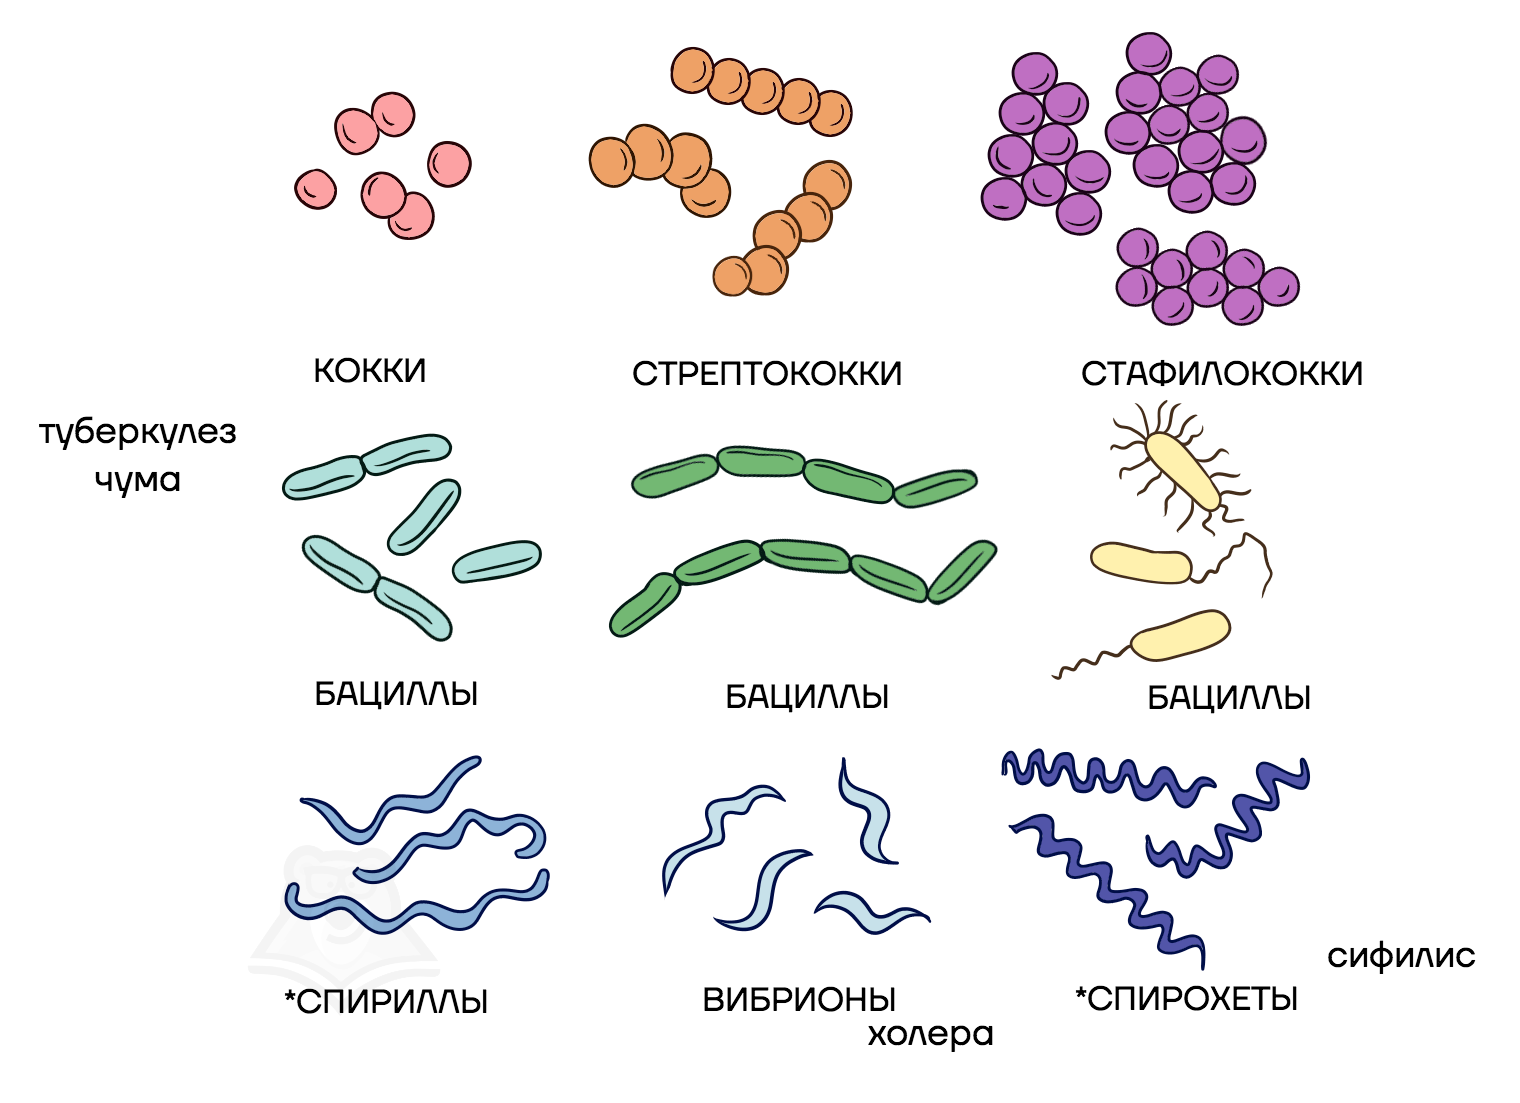 Кокковые бактерии. Стрептококки бациллы спириллы вибрионы. Палочковидные бактерии бациллы. Вибрионы стафилококки бациллы спириллы. Кокки бациллы вибрионы спириллы.